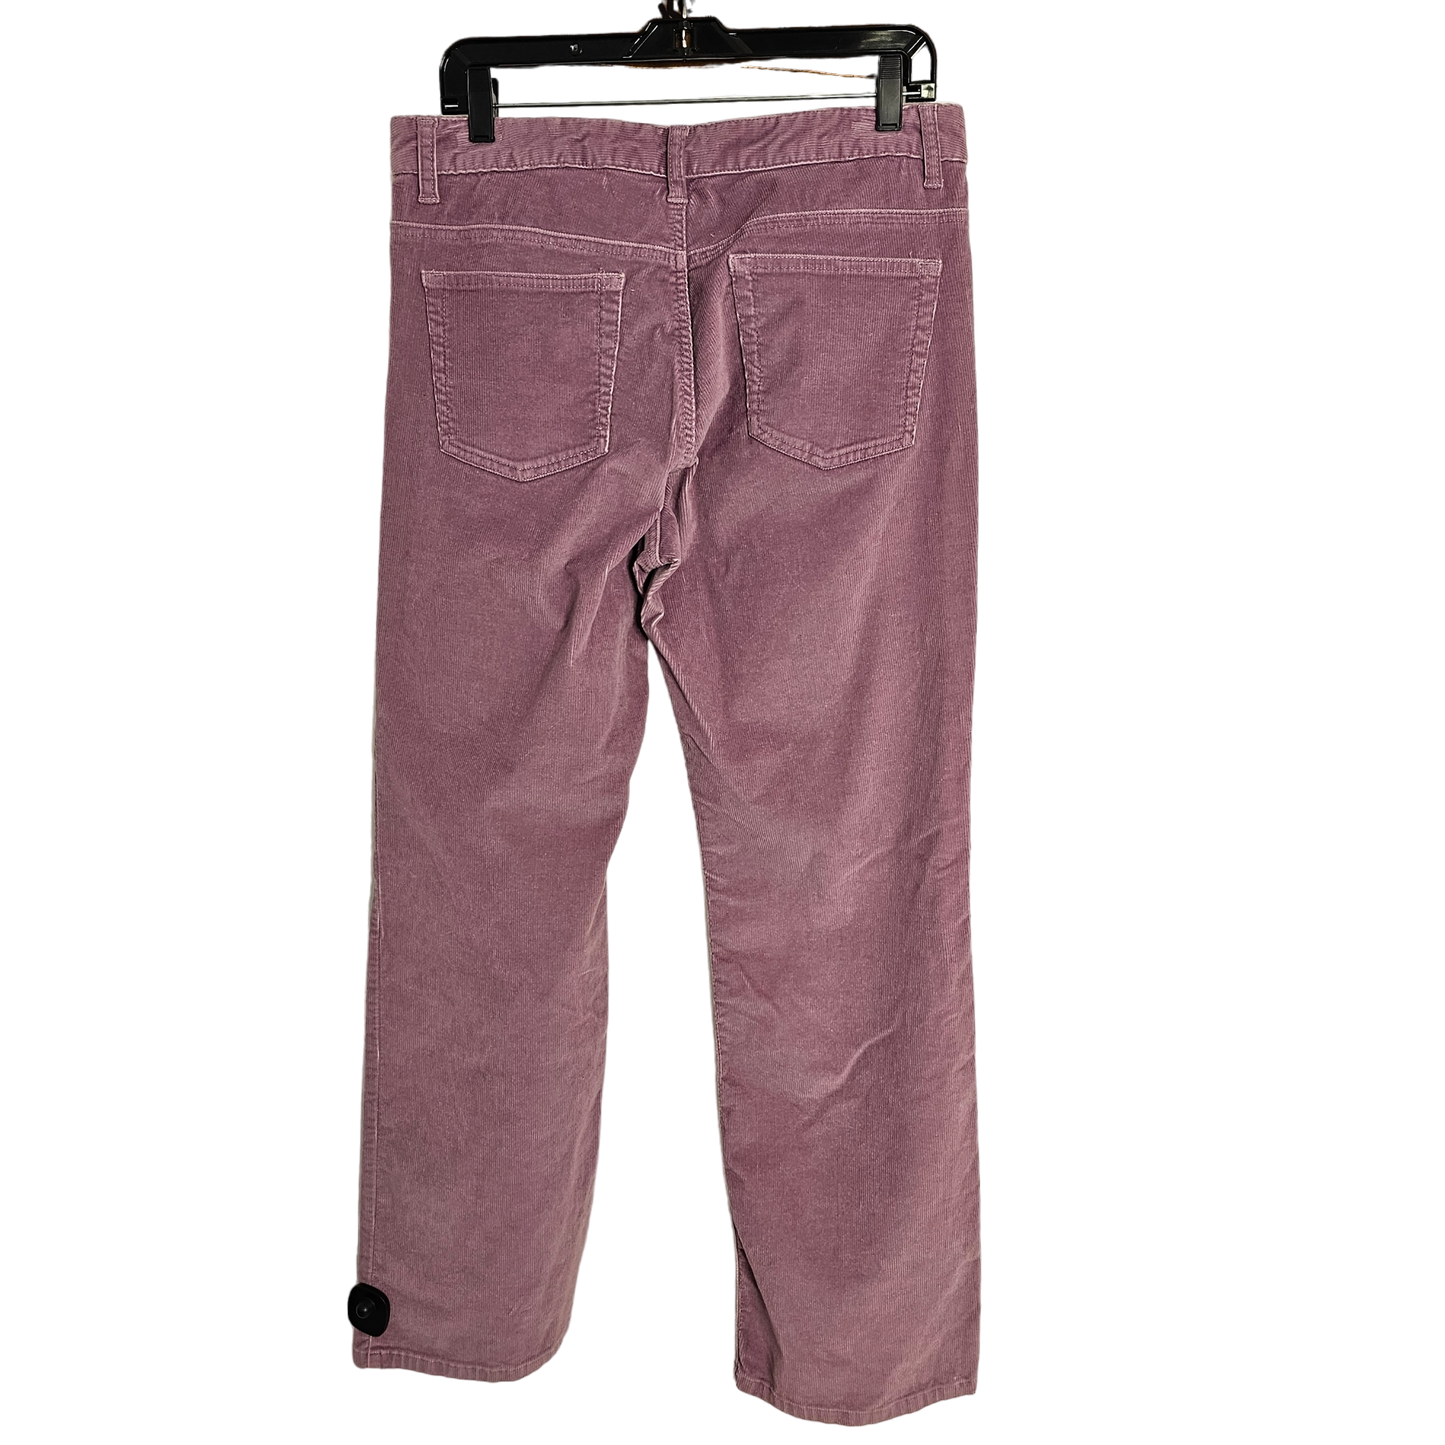 Pants Corduroy By Boston Proper  Size: 12